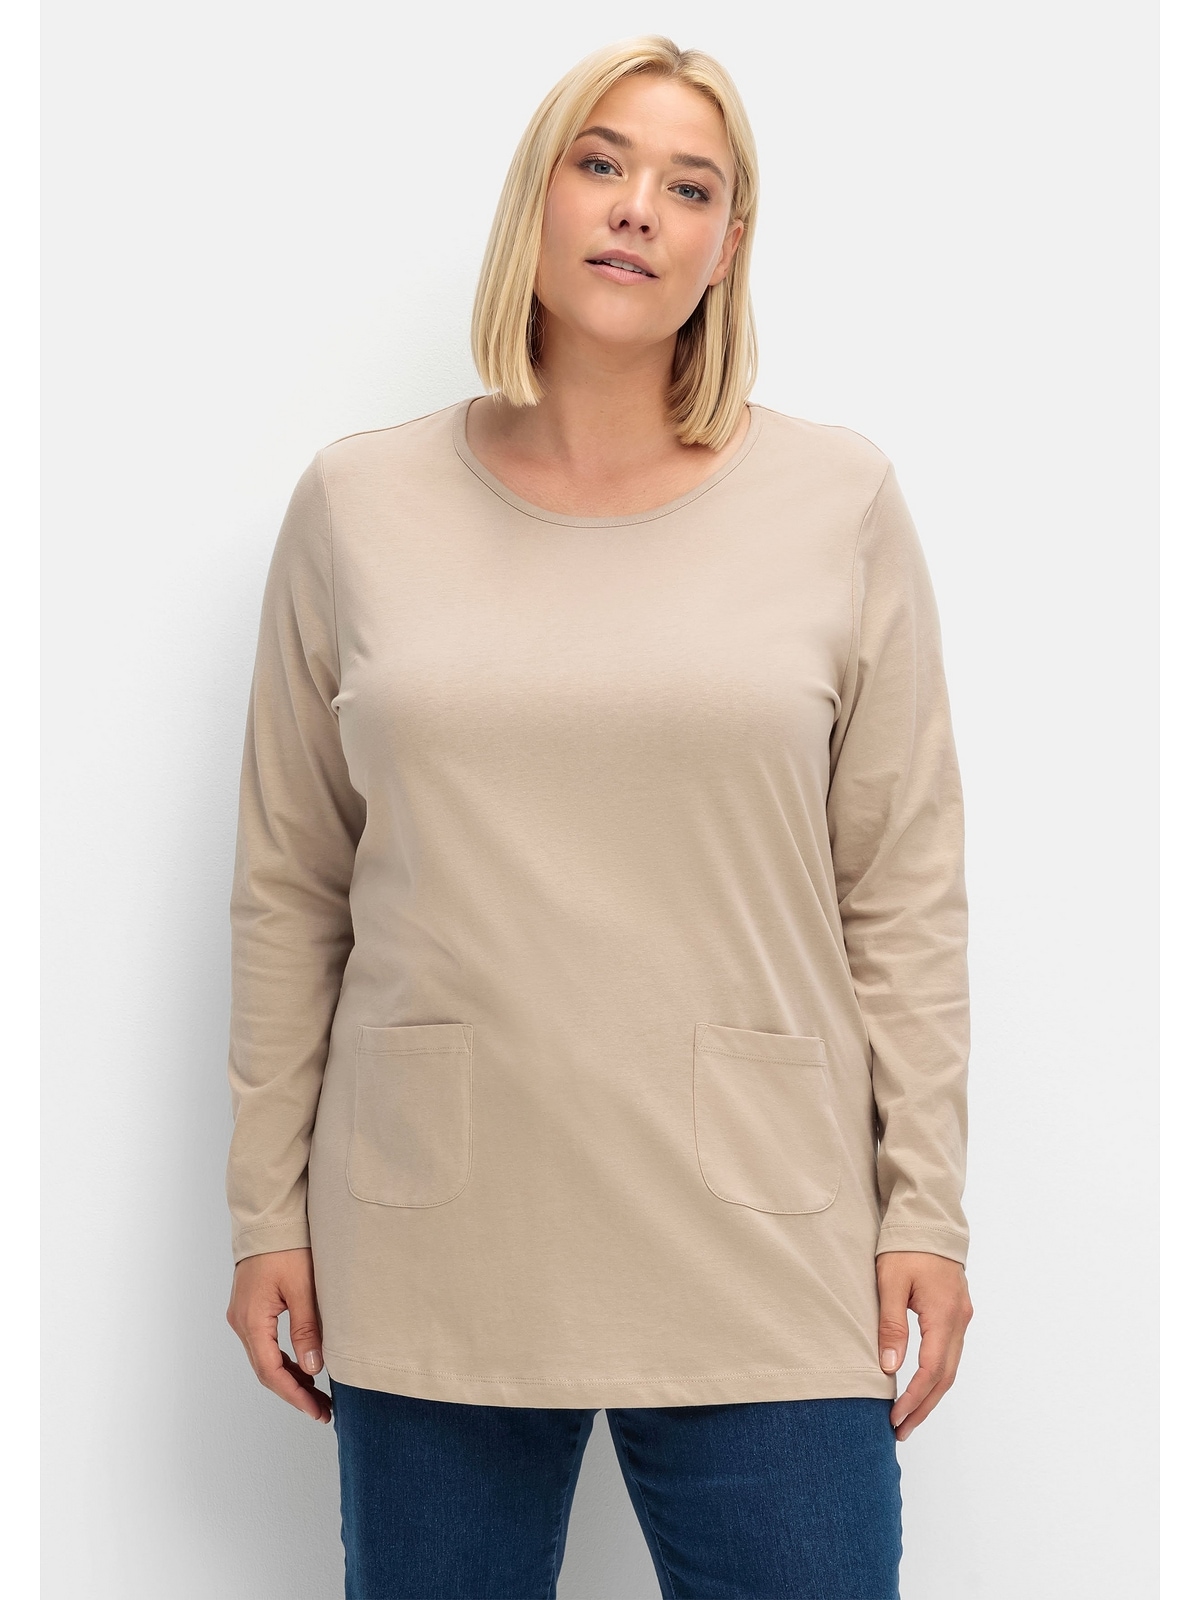 Taschen I\'m | online aufgesetzten mit Longshirt kaufen Sheego walking »Große Größen«,